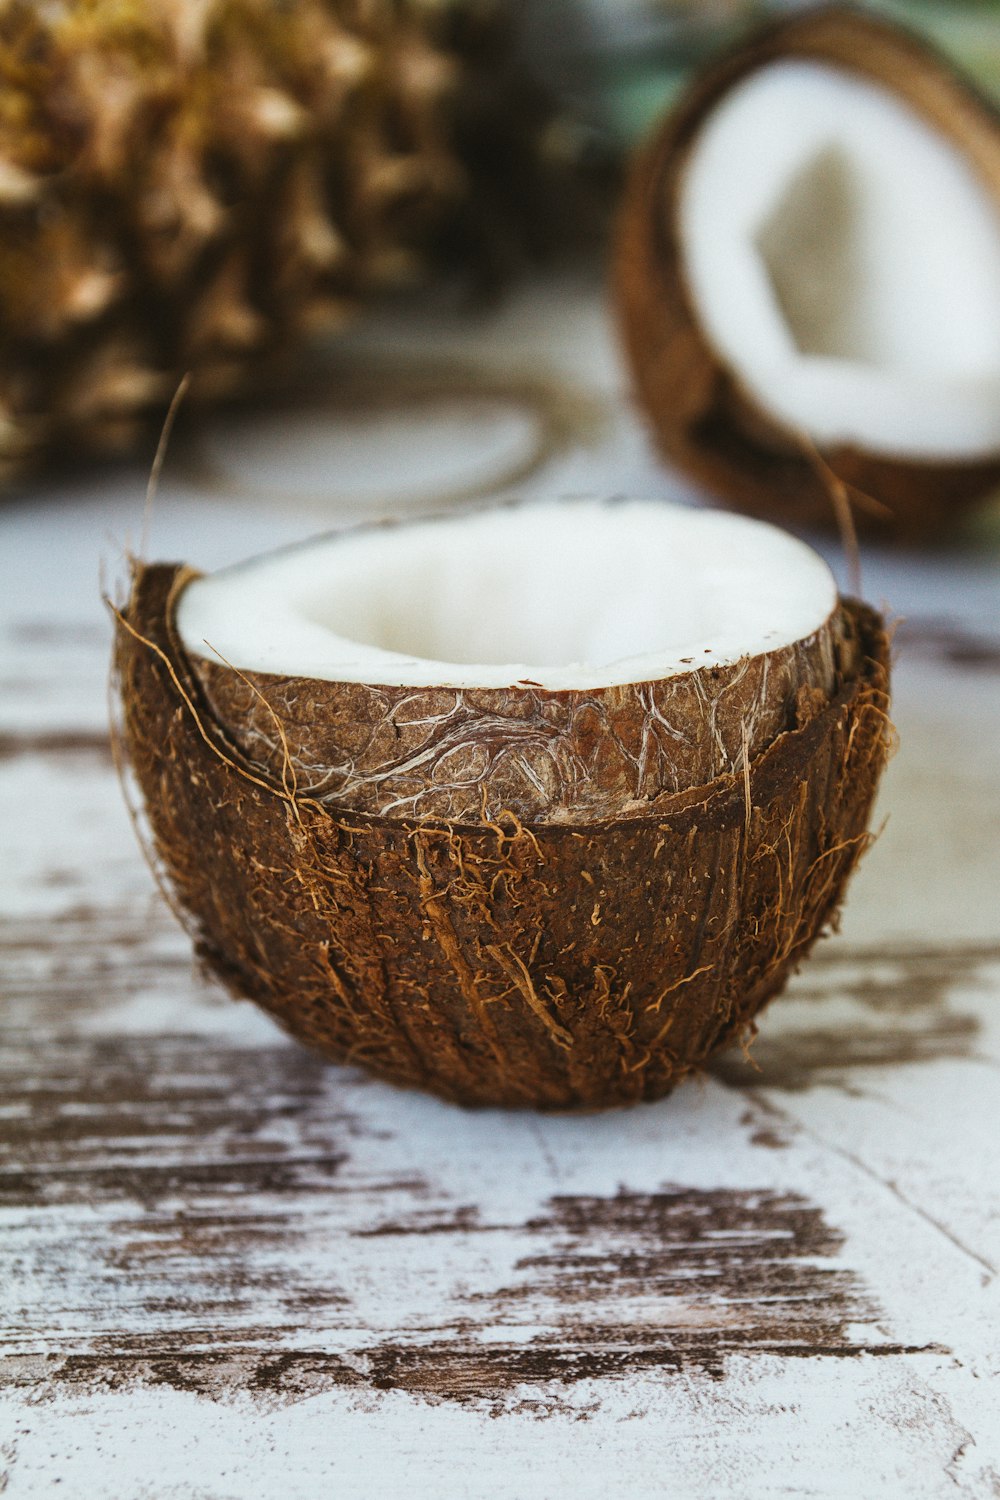 Eine halb gegessene Kokosnuss sitzt auf einem Holztisch